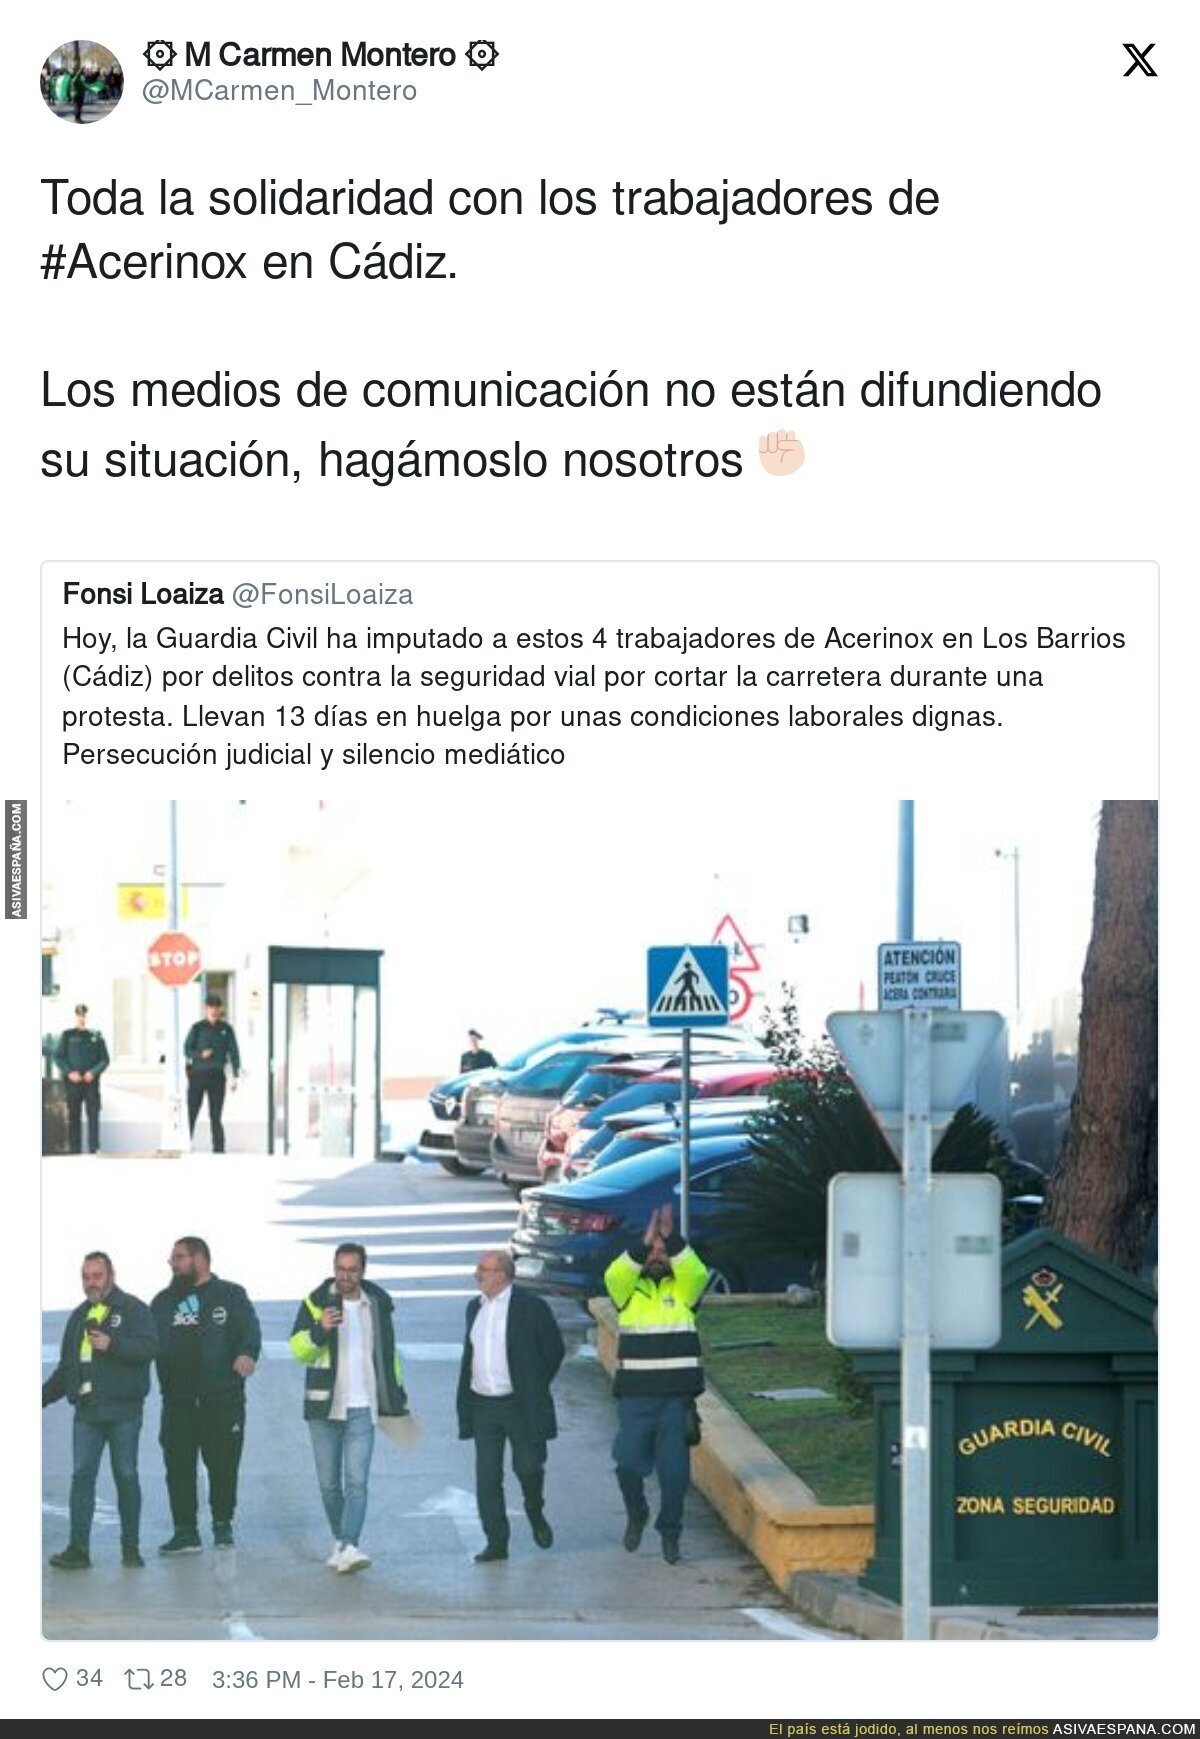 Toda la solidaridad con los trabajadores de #Acerinox en Cádiz.

Los medios de comunicación no están difundiendo su situación, hagámoslo nosotros ✊?, por @MCarmen_Montero